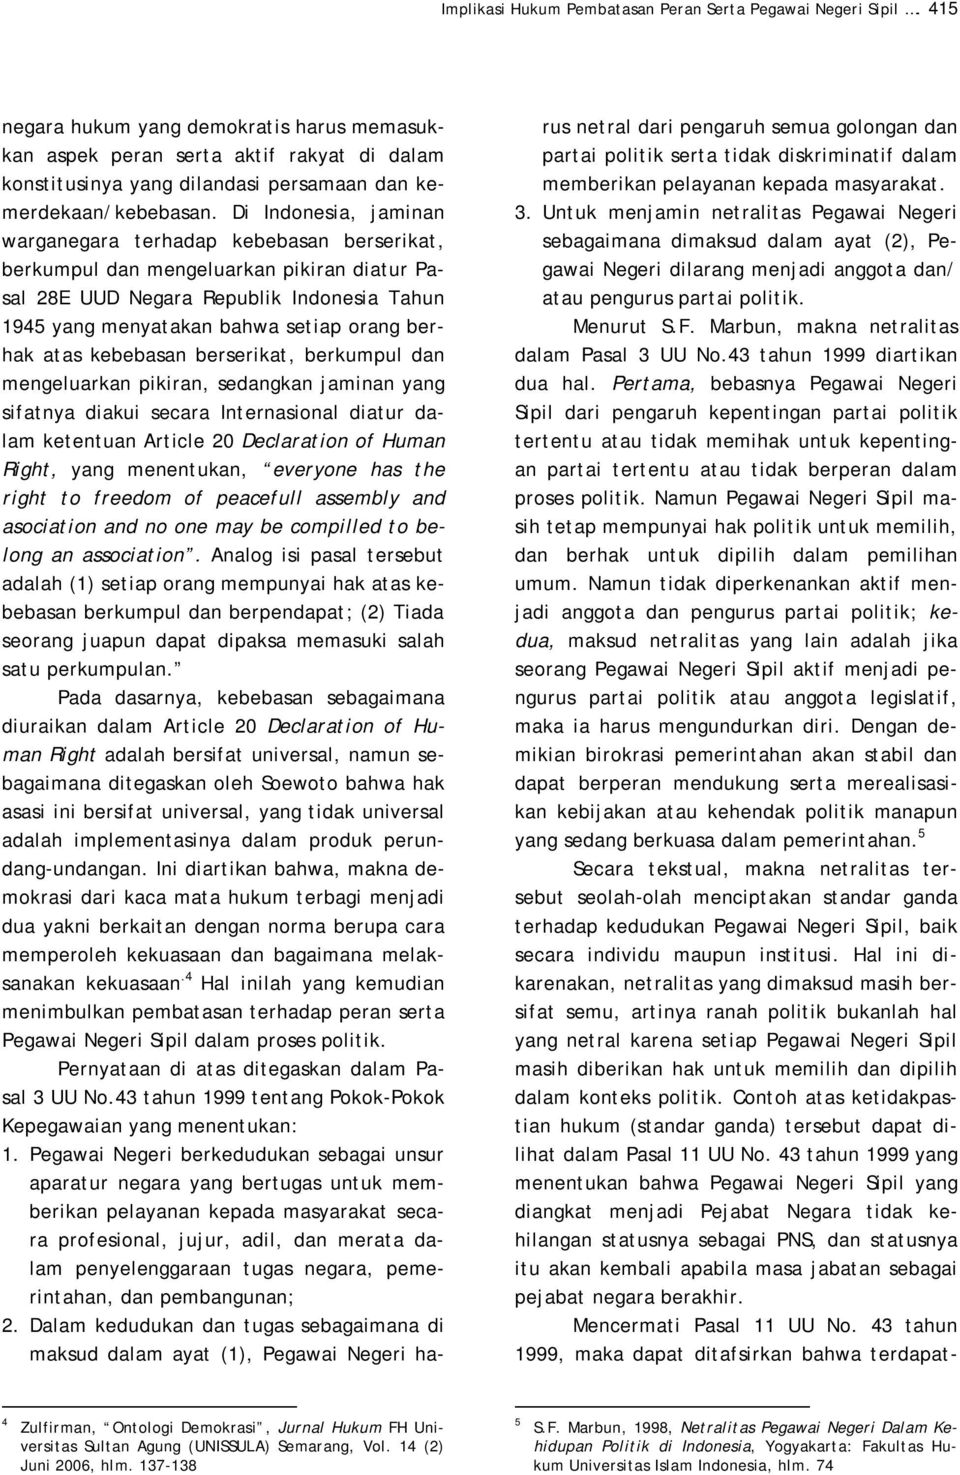 Di Indonesia, jaminan warganegara terhadap kebebasan berserikat, berkumpul dan mengeluarkan pikiran diatur Pasal 28E UUD Negara Republik Indonesia Tahun 1945 yang menyatakan bahwa setiap orang berhak